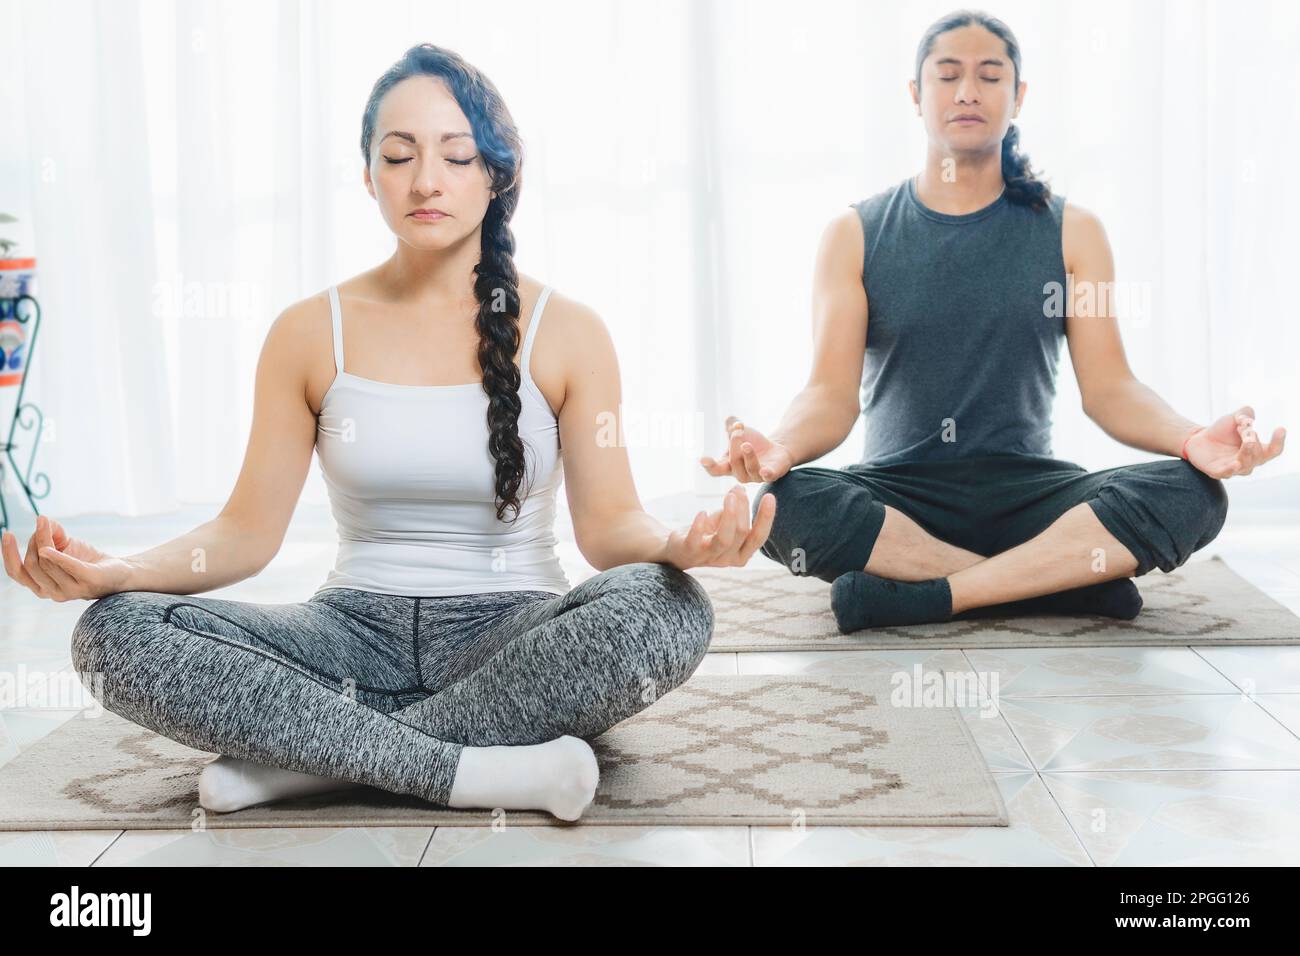 Dos personas de mediana edad están haciendo yoga en interiores, con mucha luz solar entrando por la ventana, haciendo posiciones de meditación profunda. Hay mucho de Foto de stock